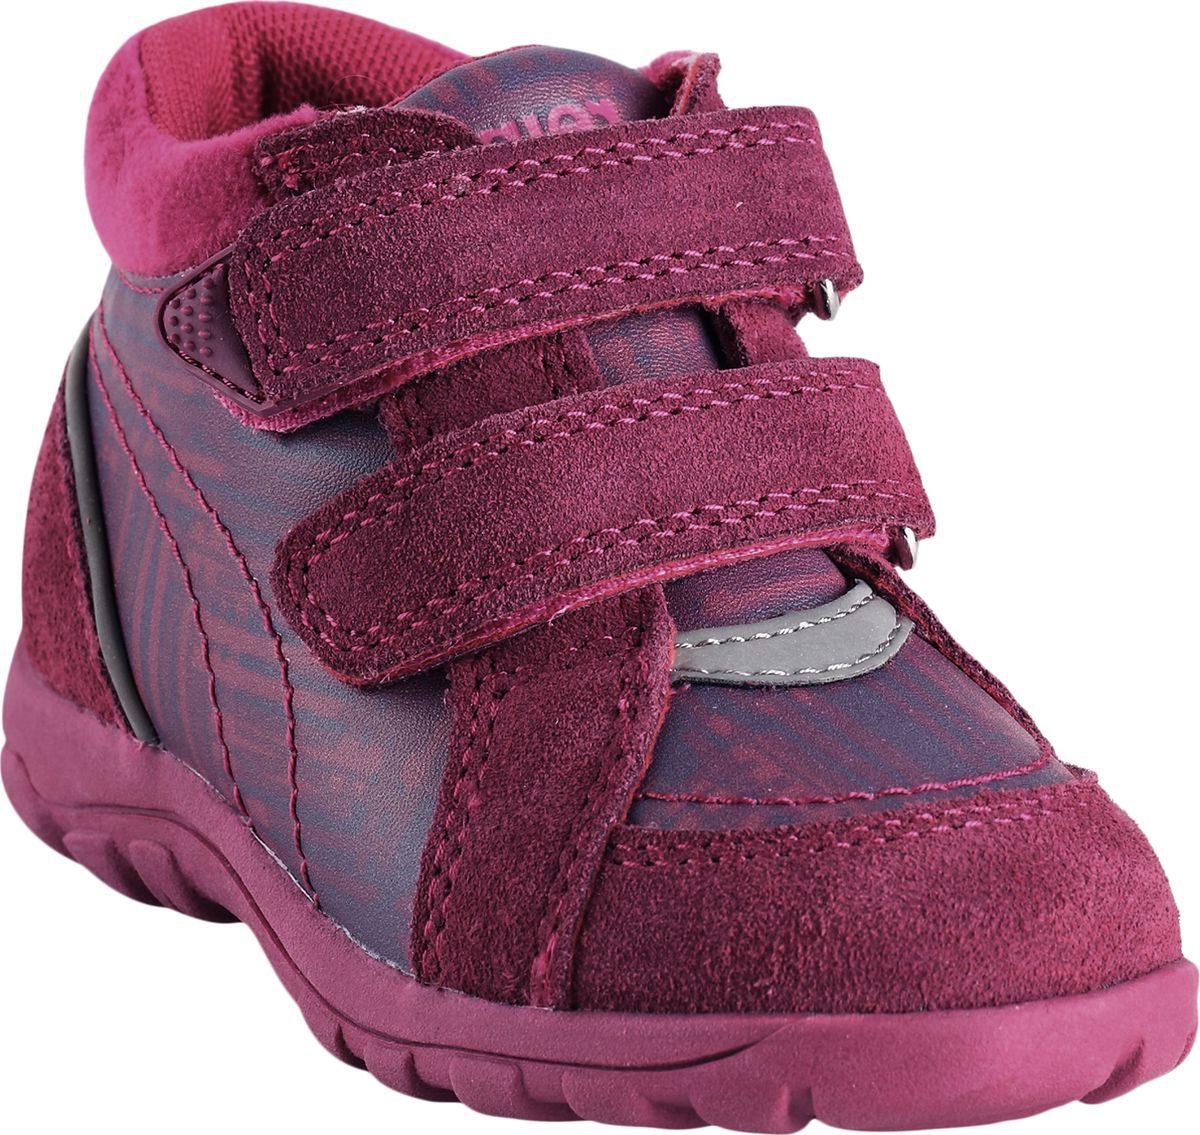 Ботинки детские Reima Lotte, цвет: розовый. 5693503691. Размер 26